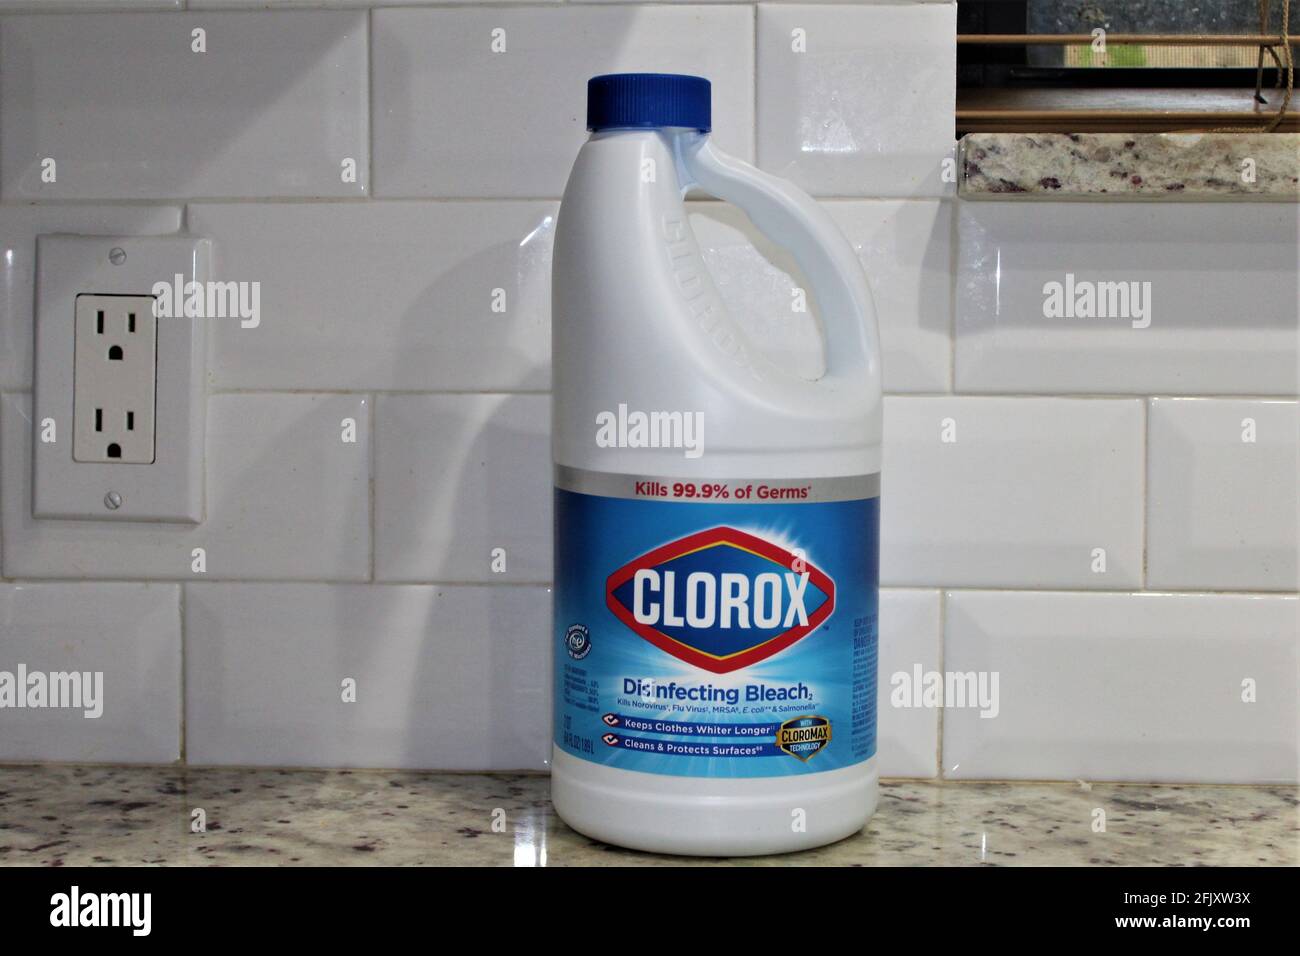 Una bottiglia di candeggina disinfettante Clorox utilizzata per la pulizia, isolata in una cucina domestica. Foto Stock